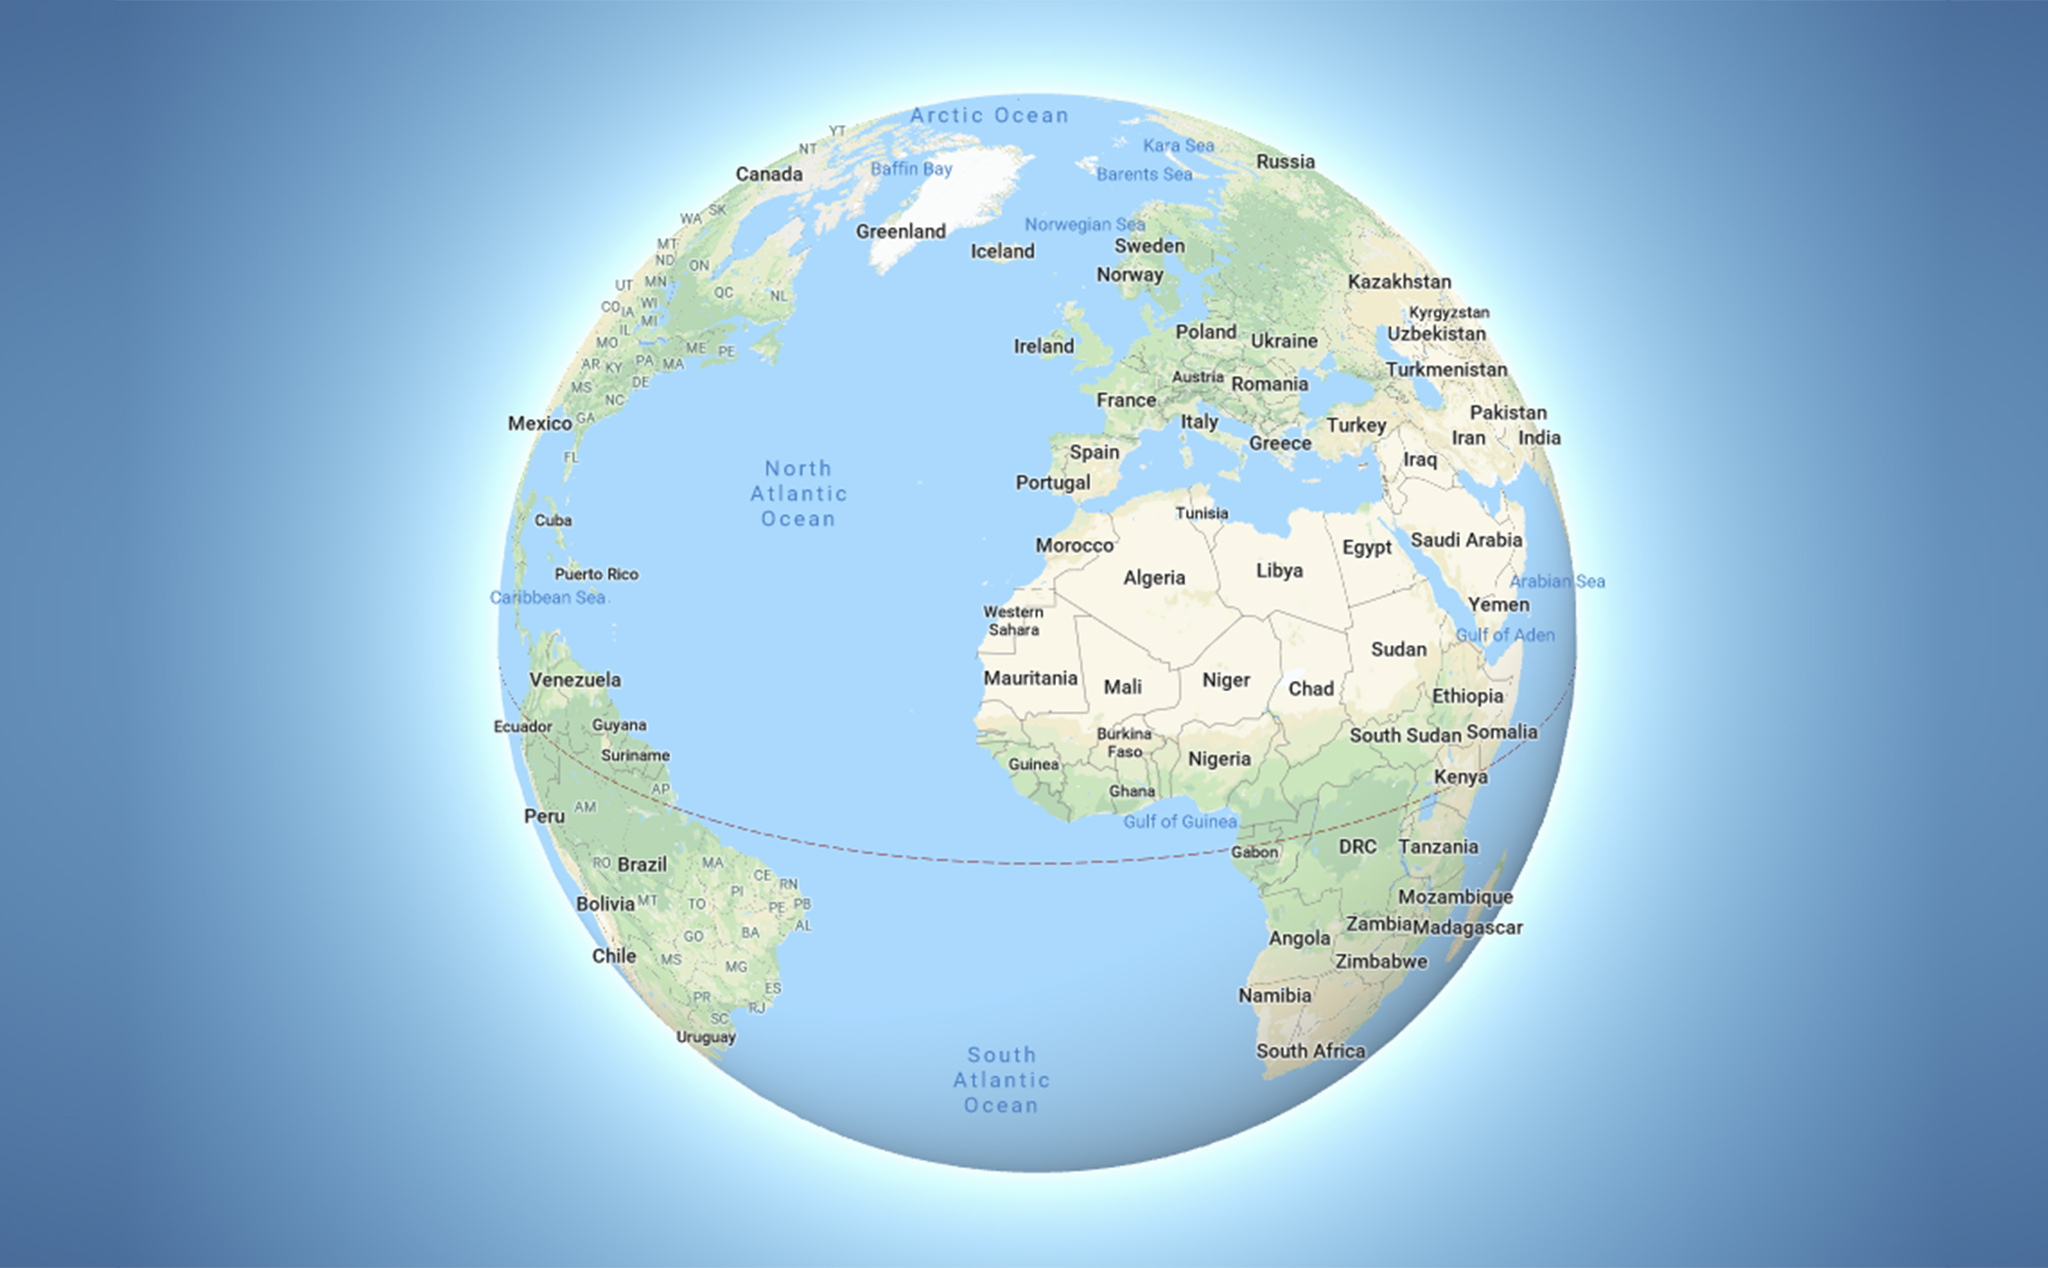 Chế độ 3D Globe trên Google Maps desktop sẽ thổi bay giới hạn về không gian, giúp bạn chìm đắm trong cảm giác đang du ngoạn trên bề mặt trái đất. Cùng lướt qua các quốc gia, hồ, sông, rãnh đại dương trên toàn thế giới để khám phá những điều mới lạ!